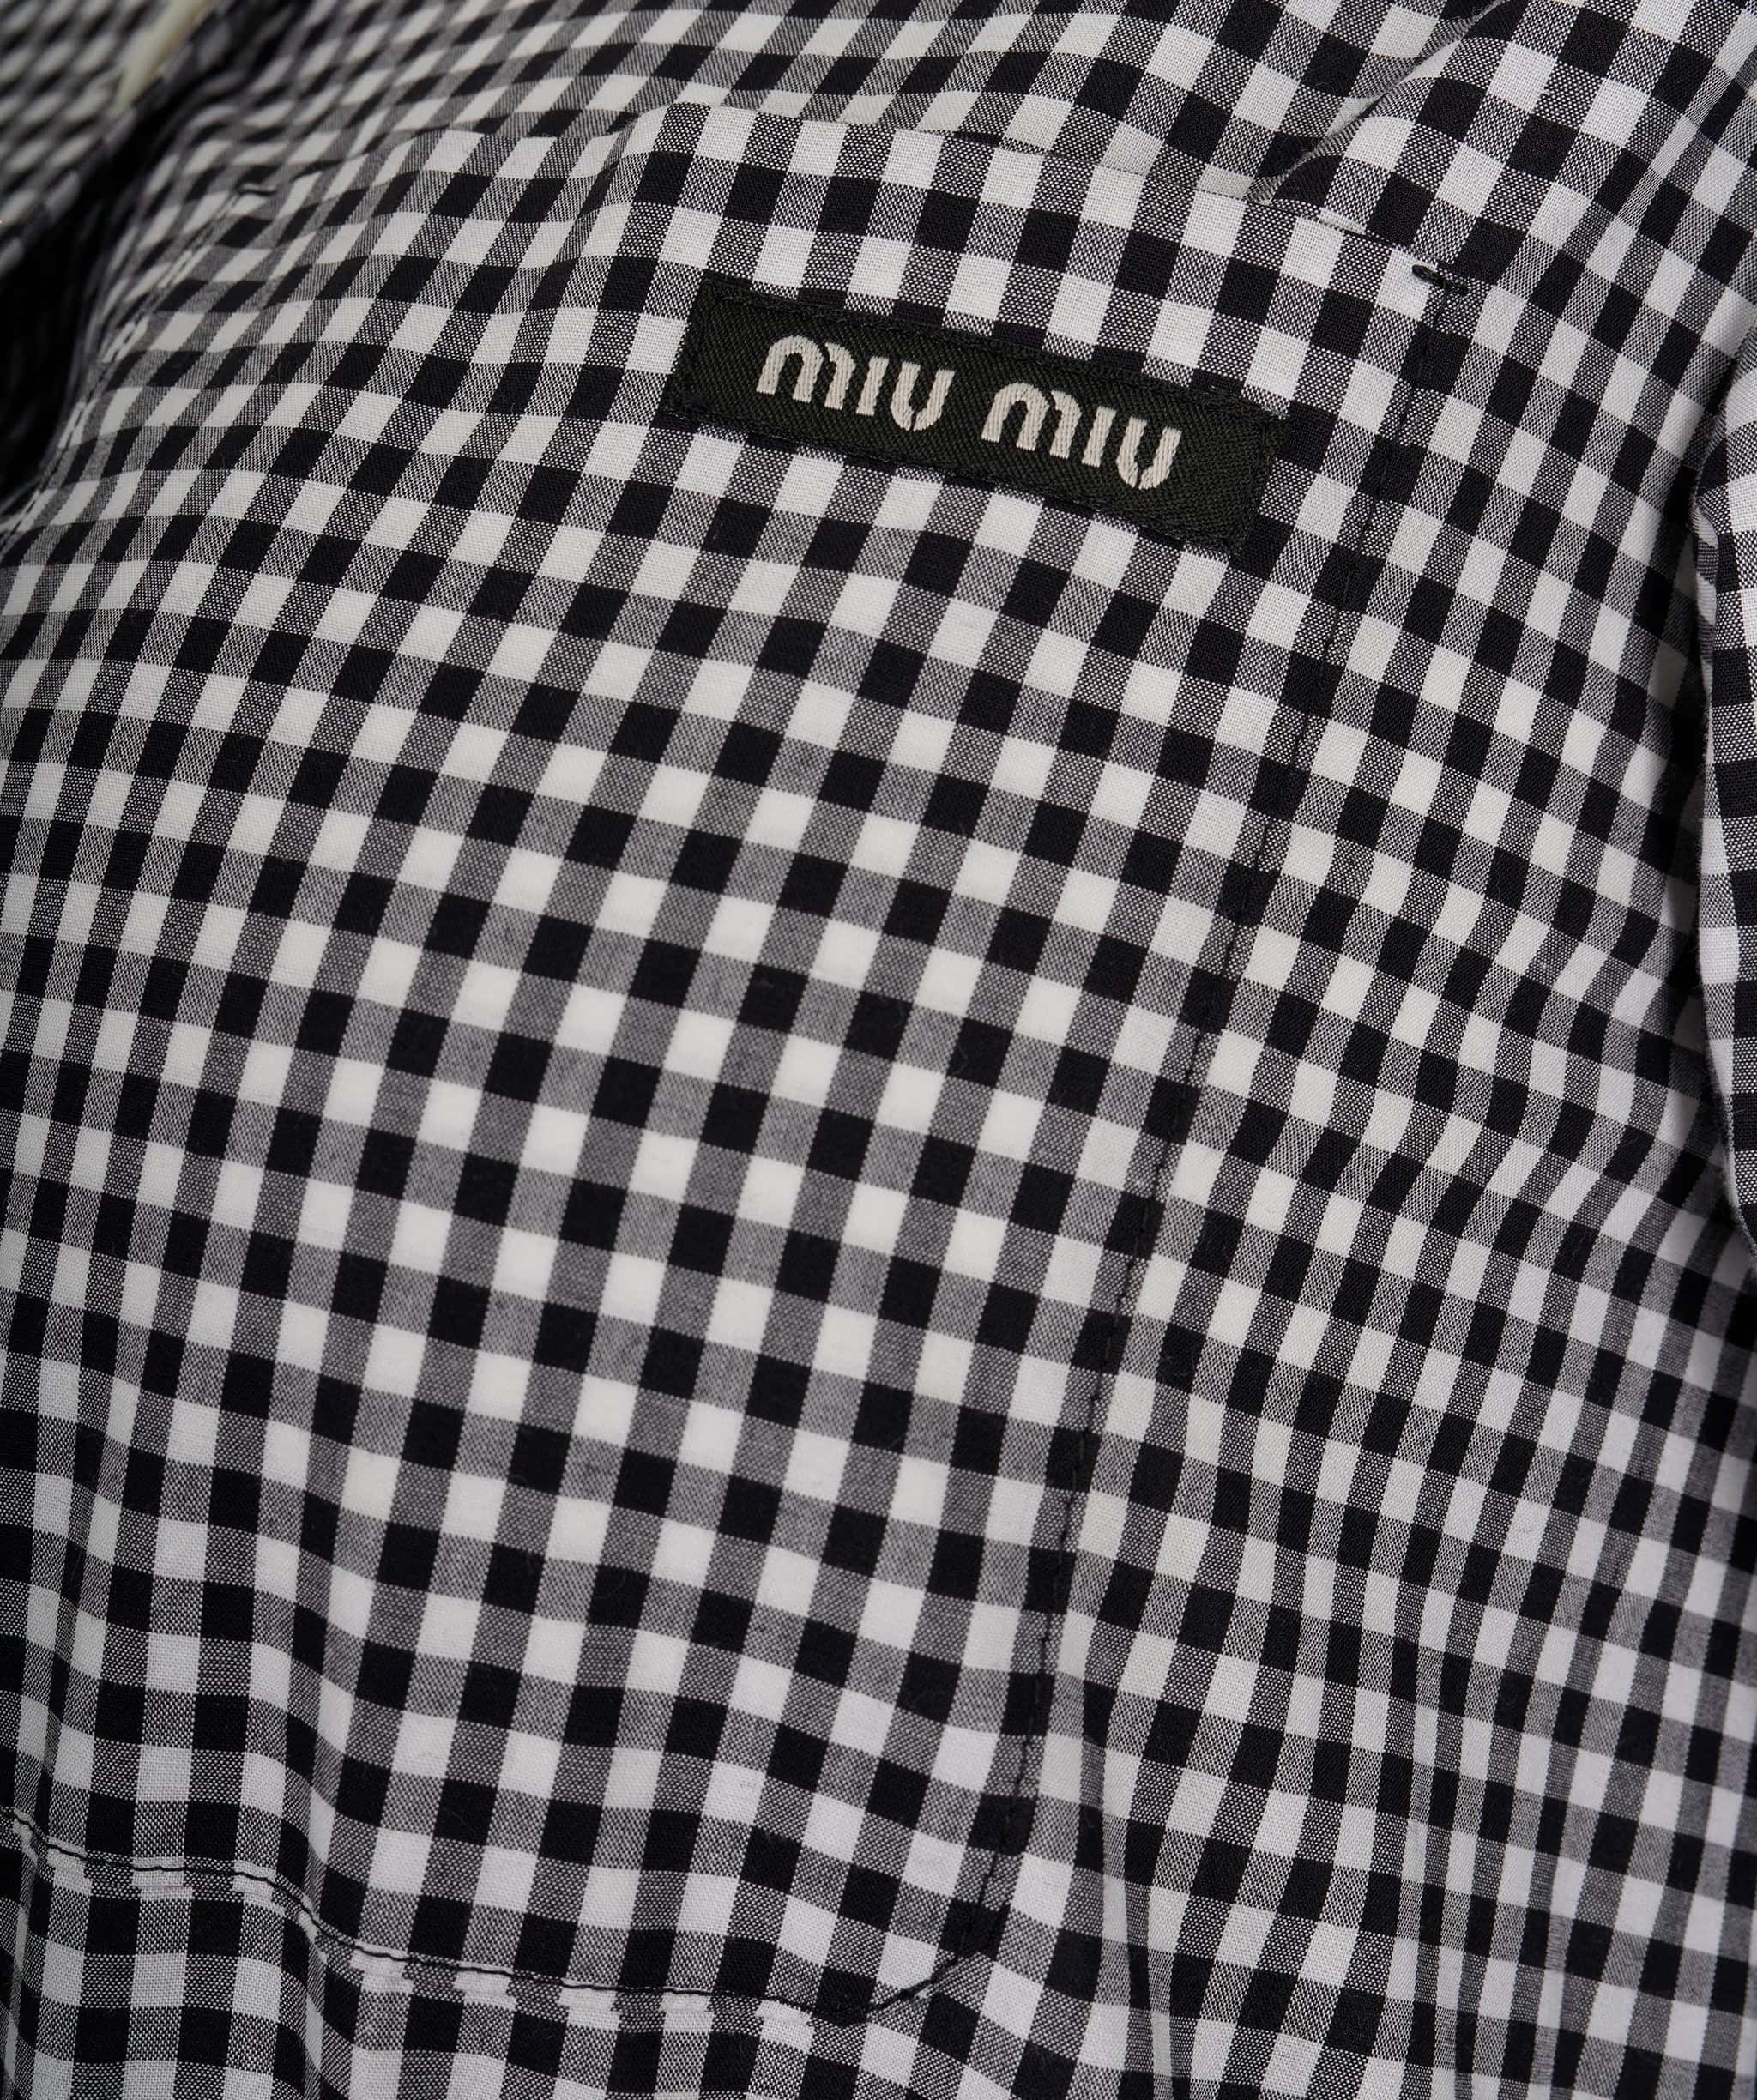 Miumiu Miu Miu black and white dress ALC0605